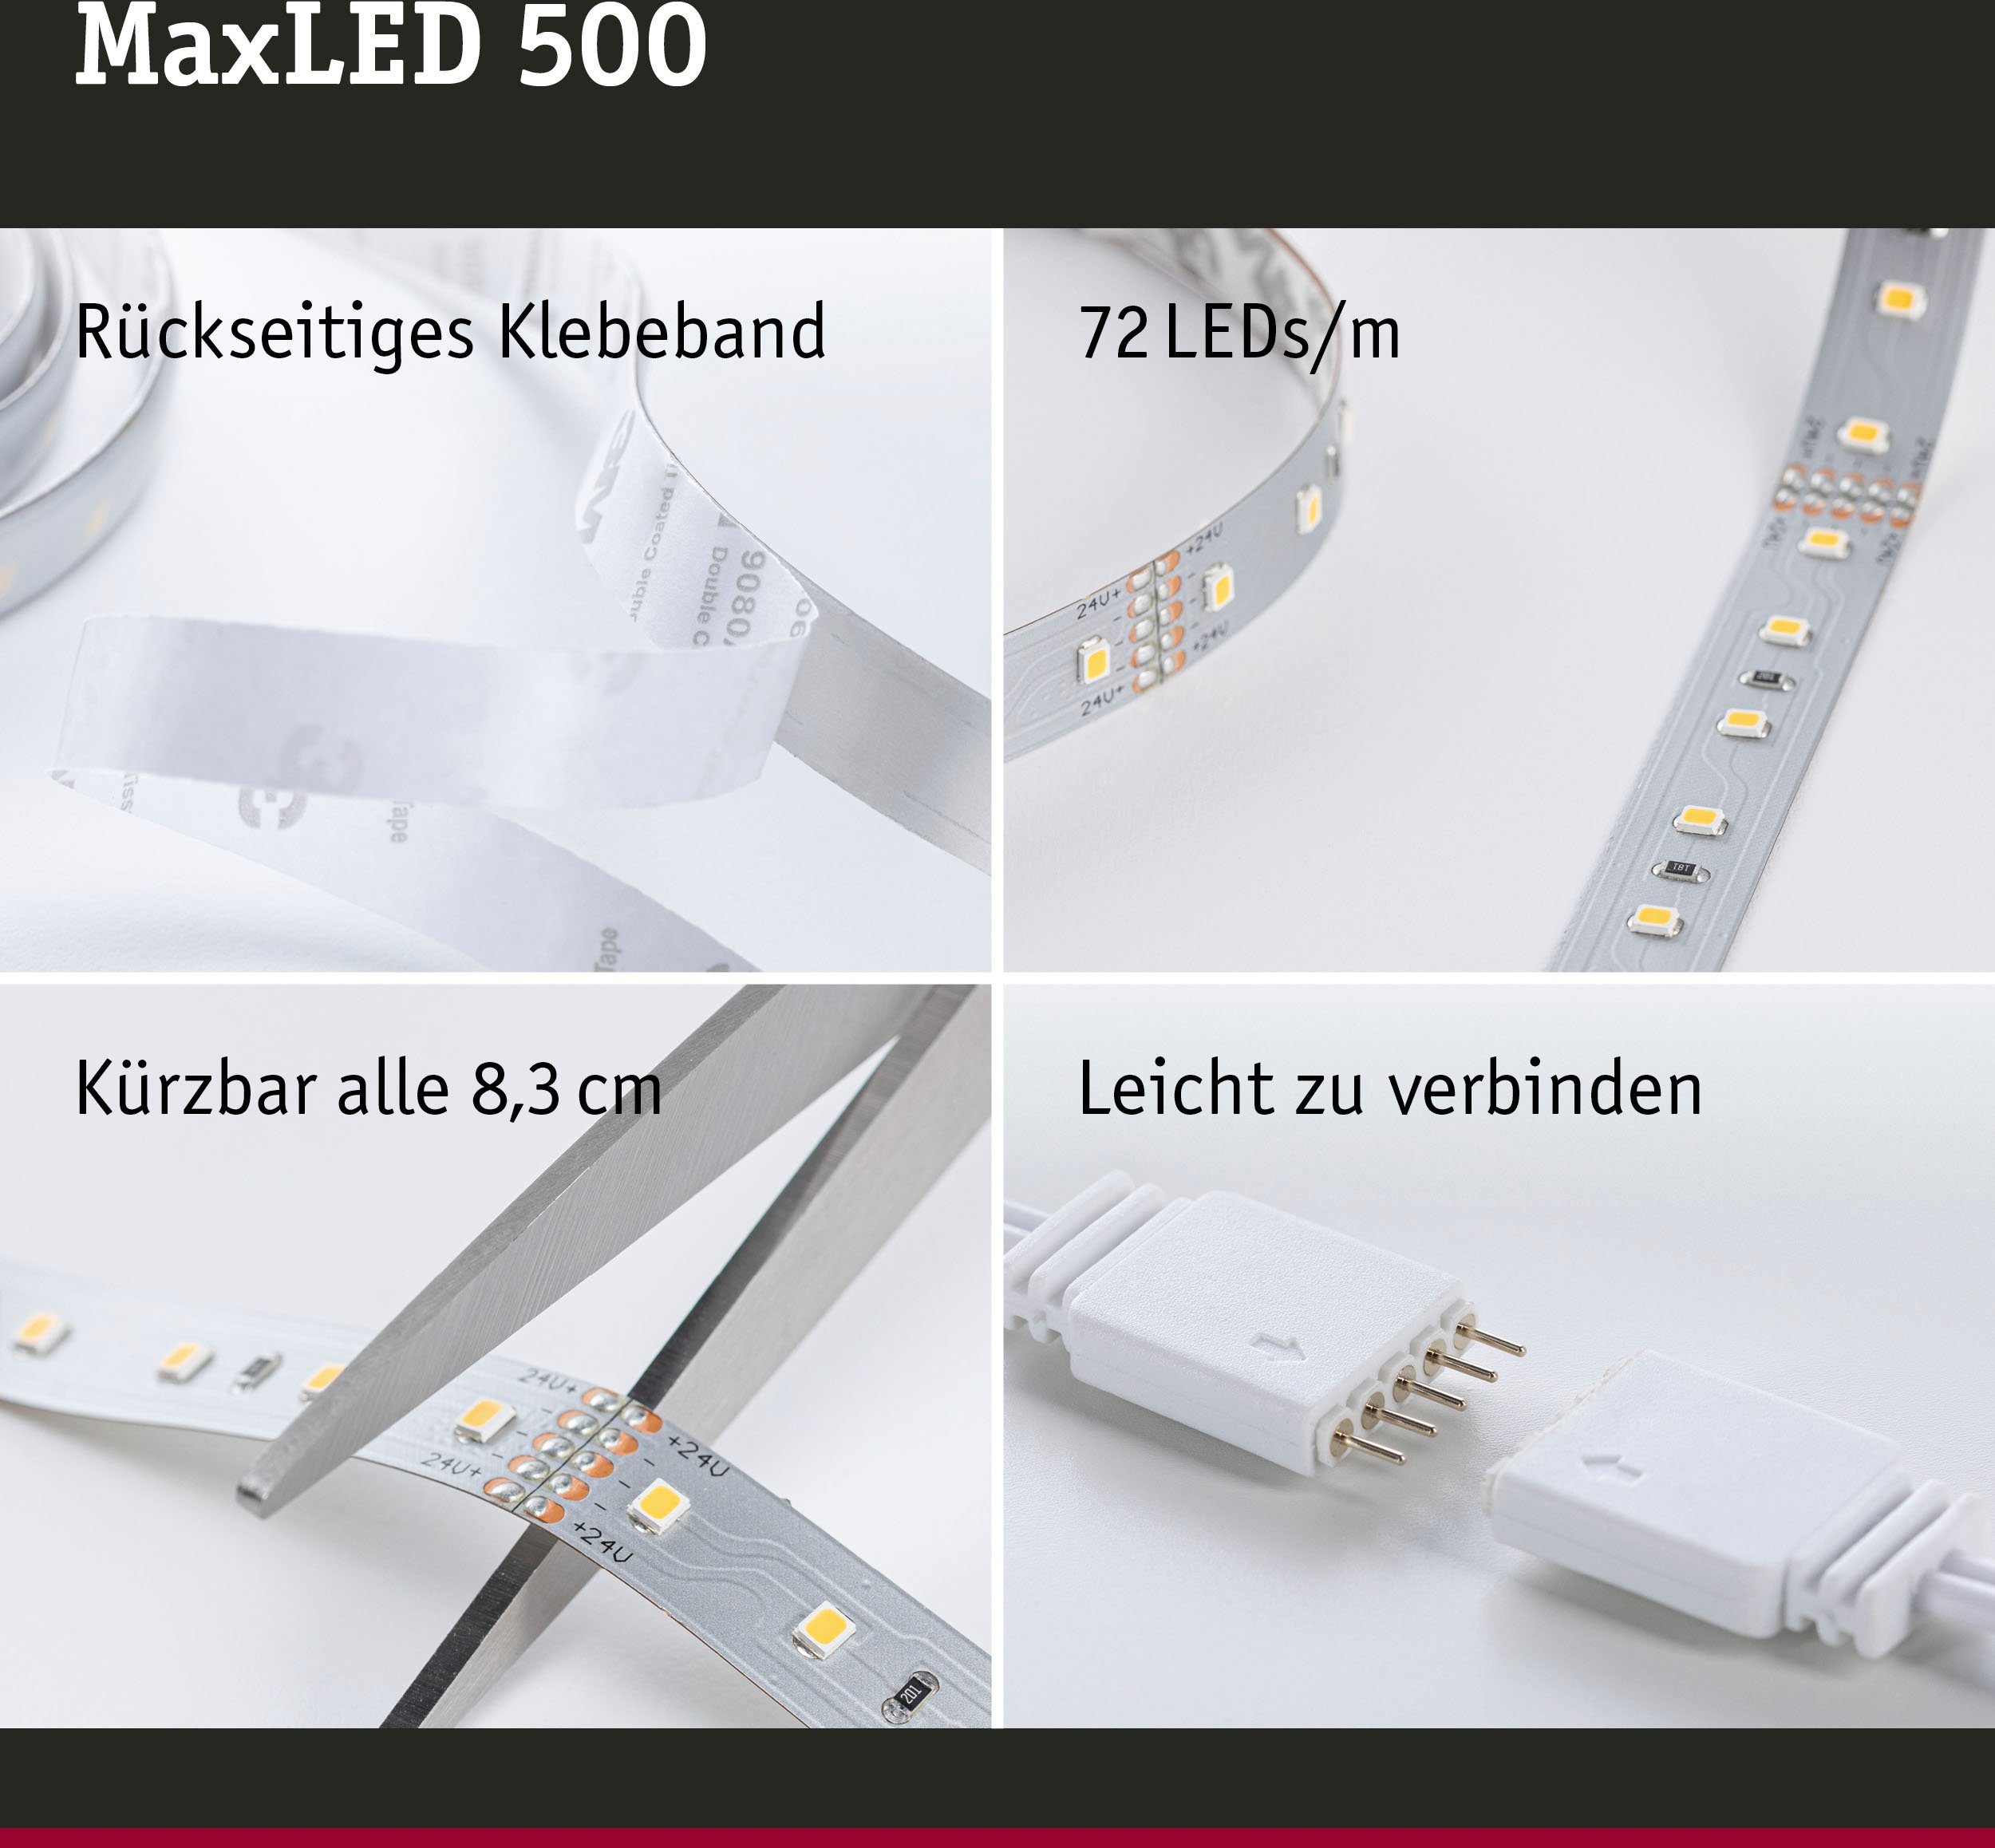 6500K MaxLED LED-Streifen Basisset 18W 1650lm Paulmann 500 3m 1-flammig unbeschichtet, Tageslichtweiß